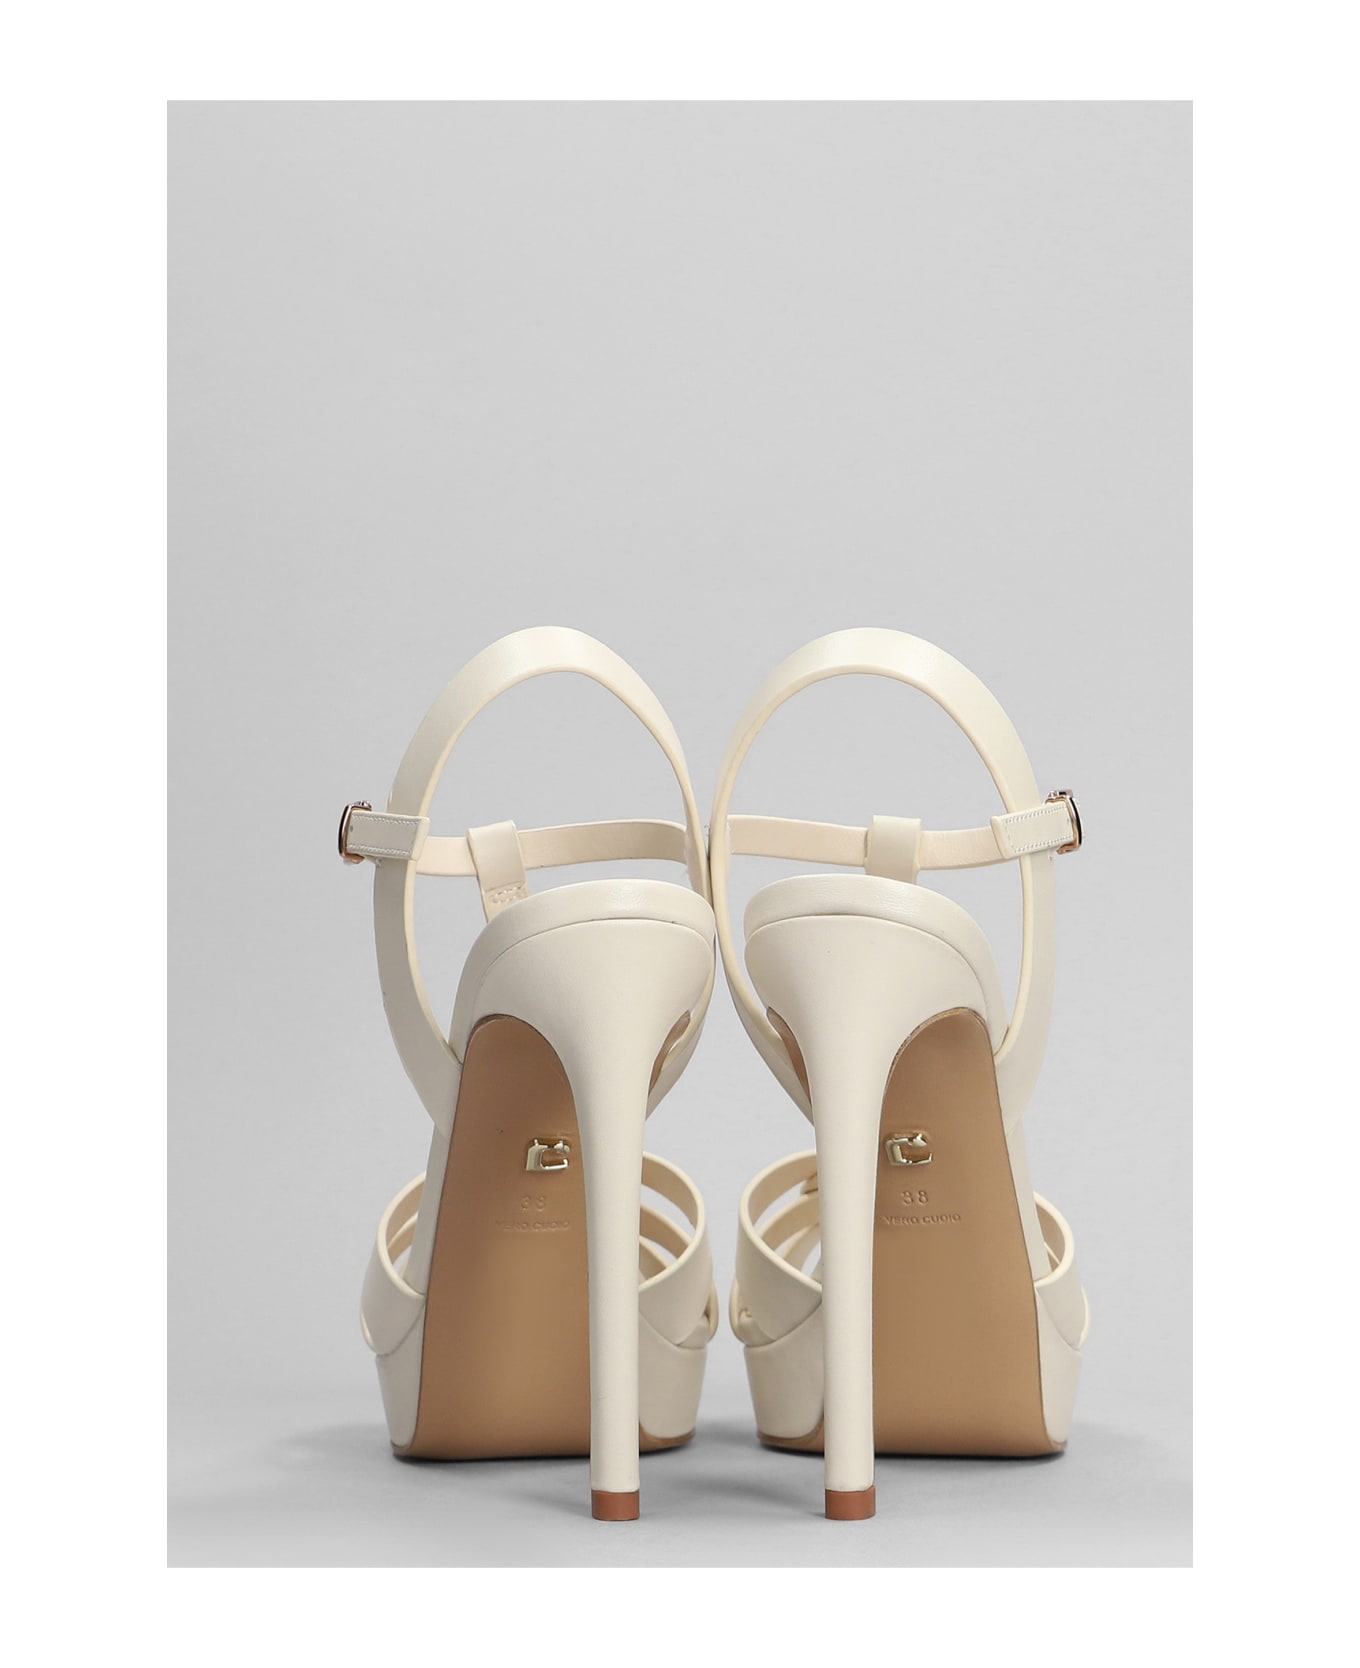 Lola Cruz Aria Platform Sandals In Beige Leather - beige